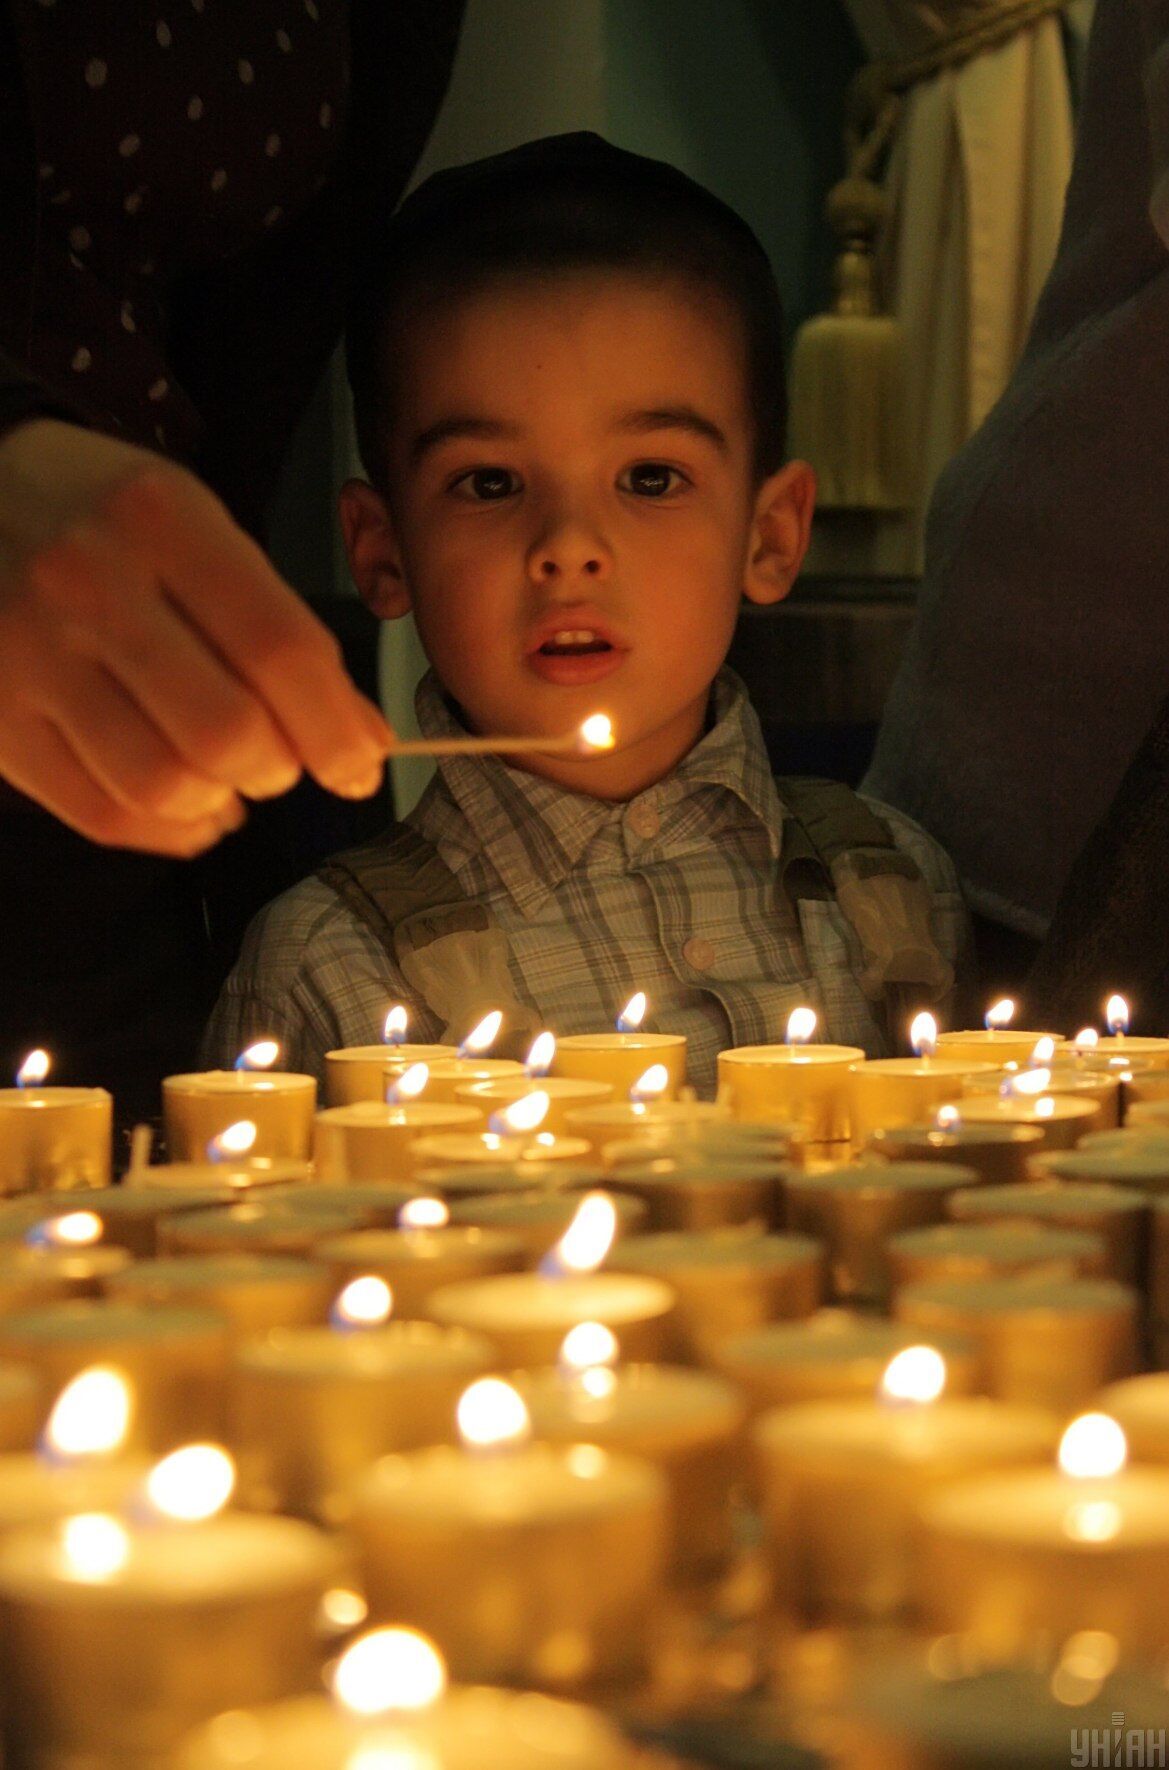 На Песах, перед седером, принято зажигать свечи